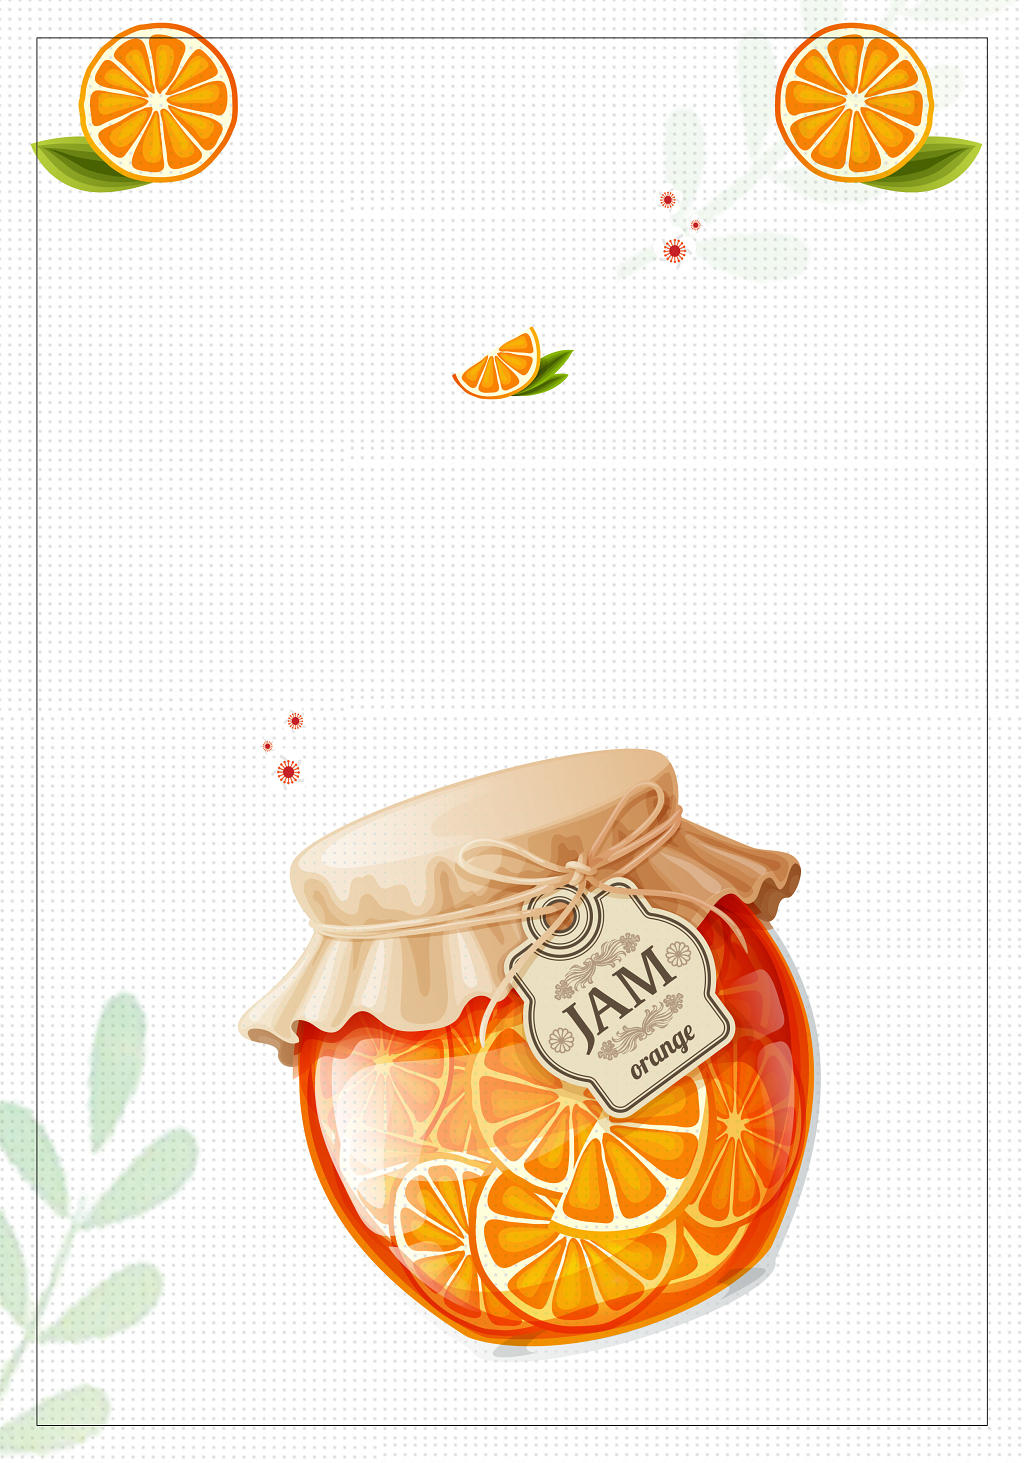 清新橙子果酱夏天水果茶饮品促销边框海报背景